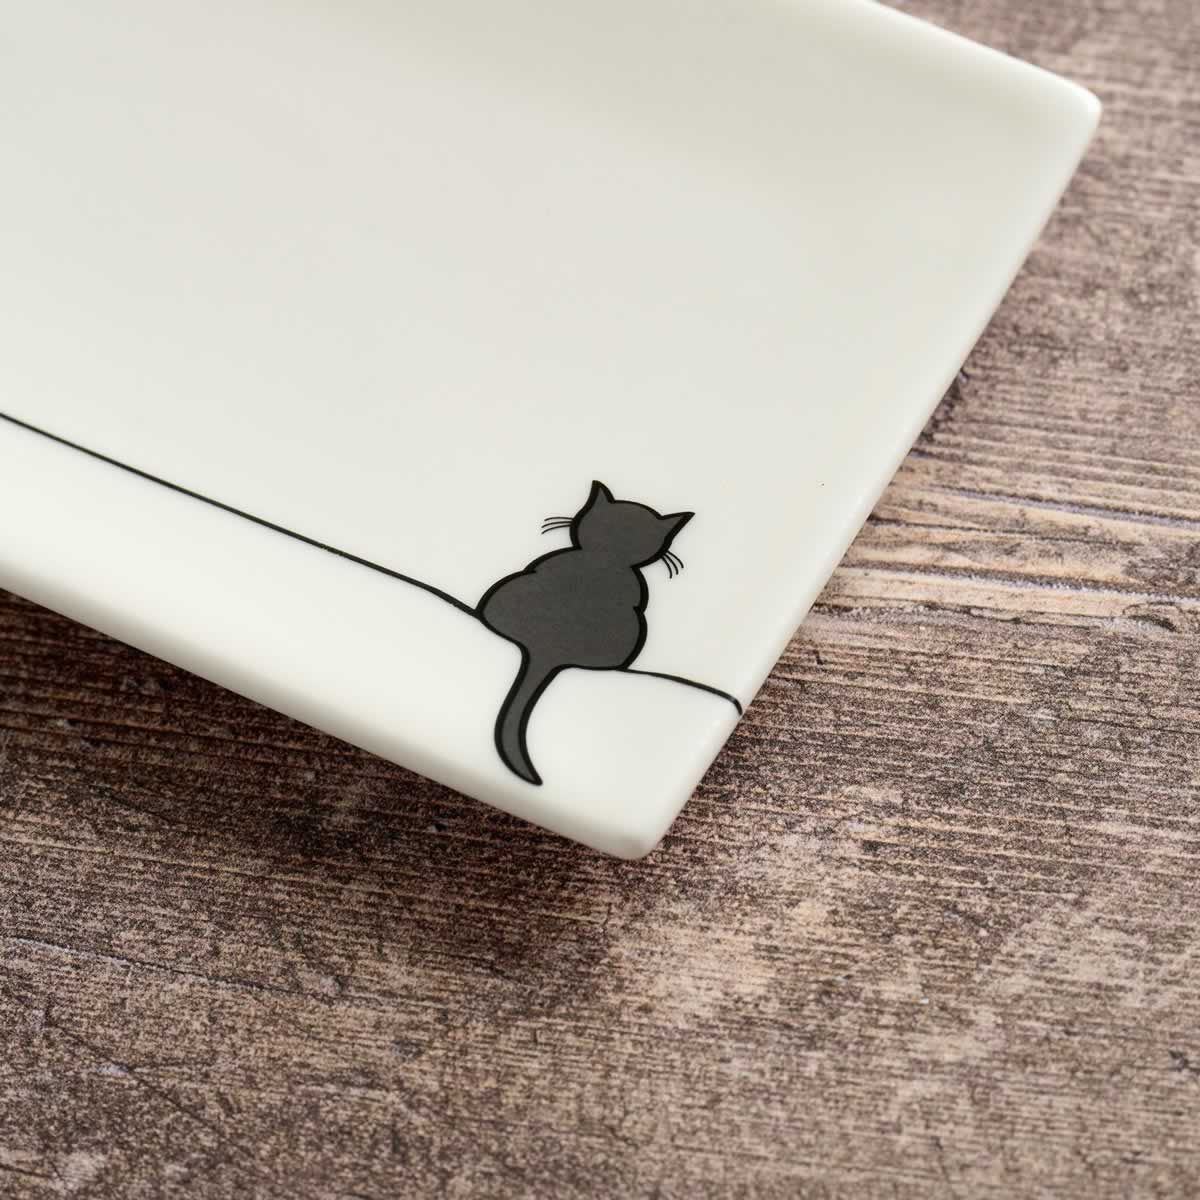 Crouching Cat Mini Tray close up